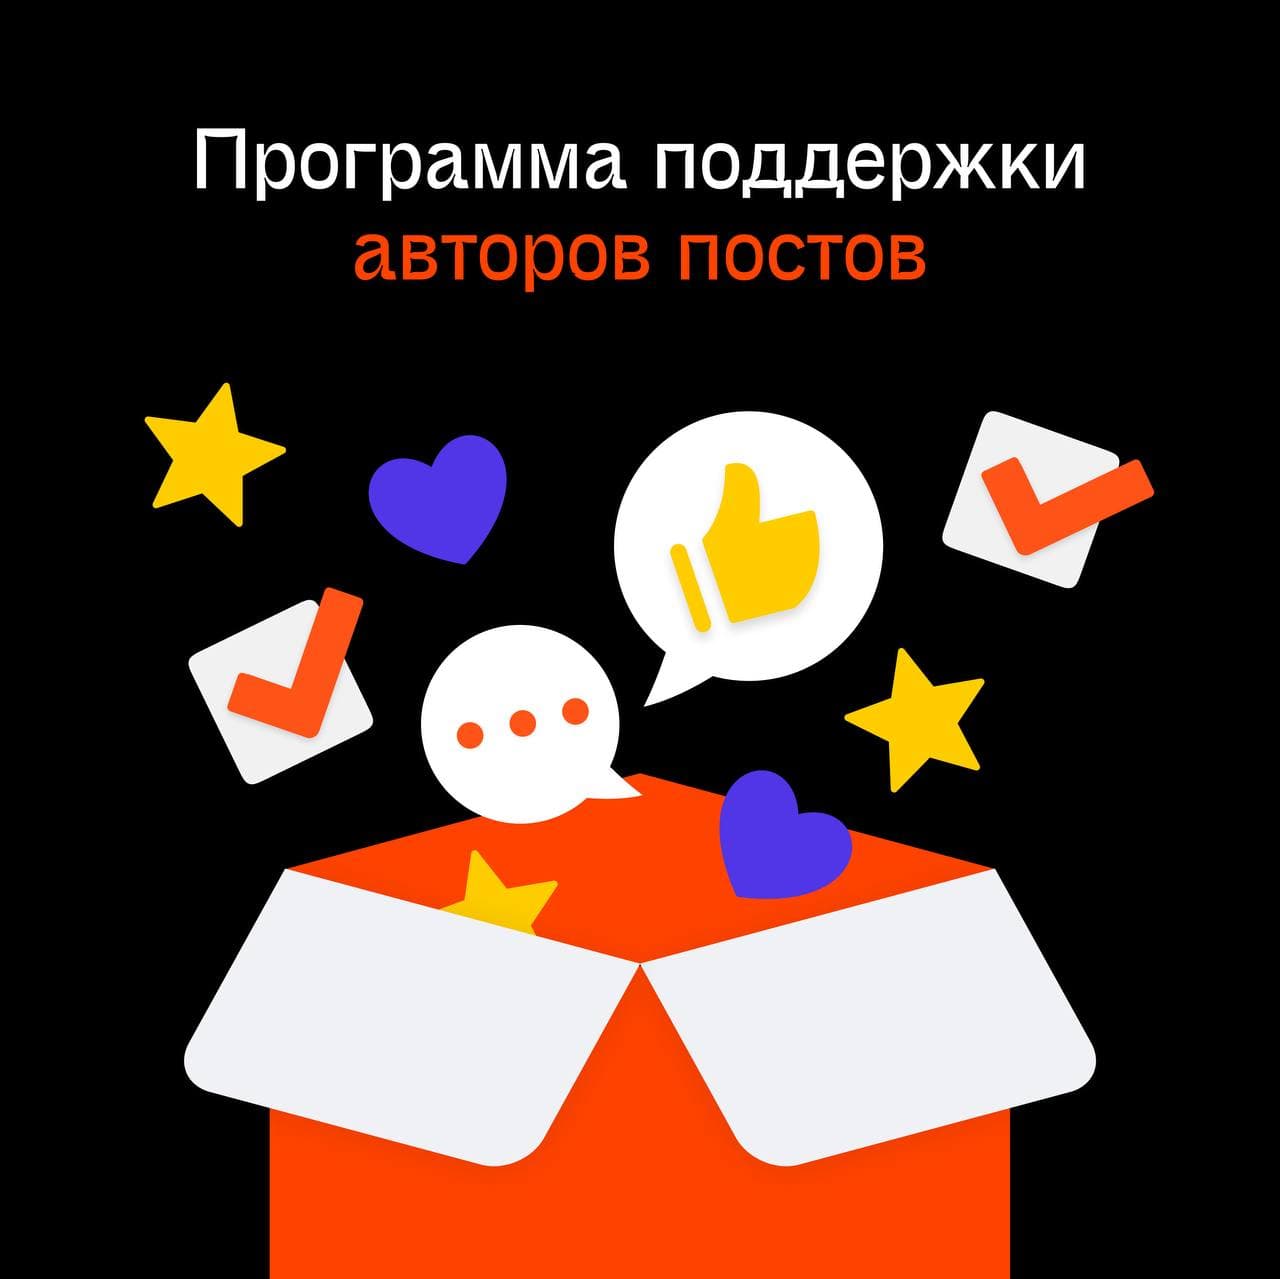 Яндекс запускает программу поддержки авторов постов в Дзене